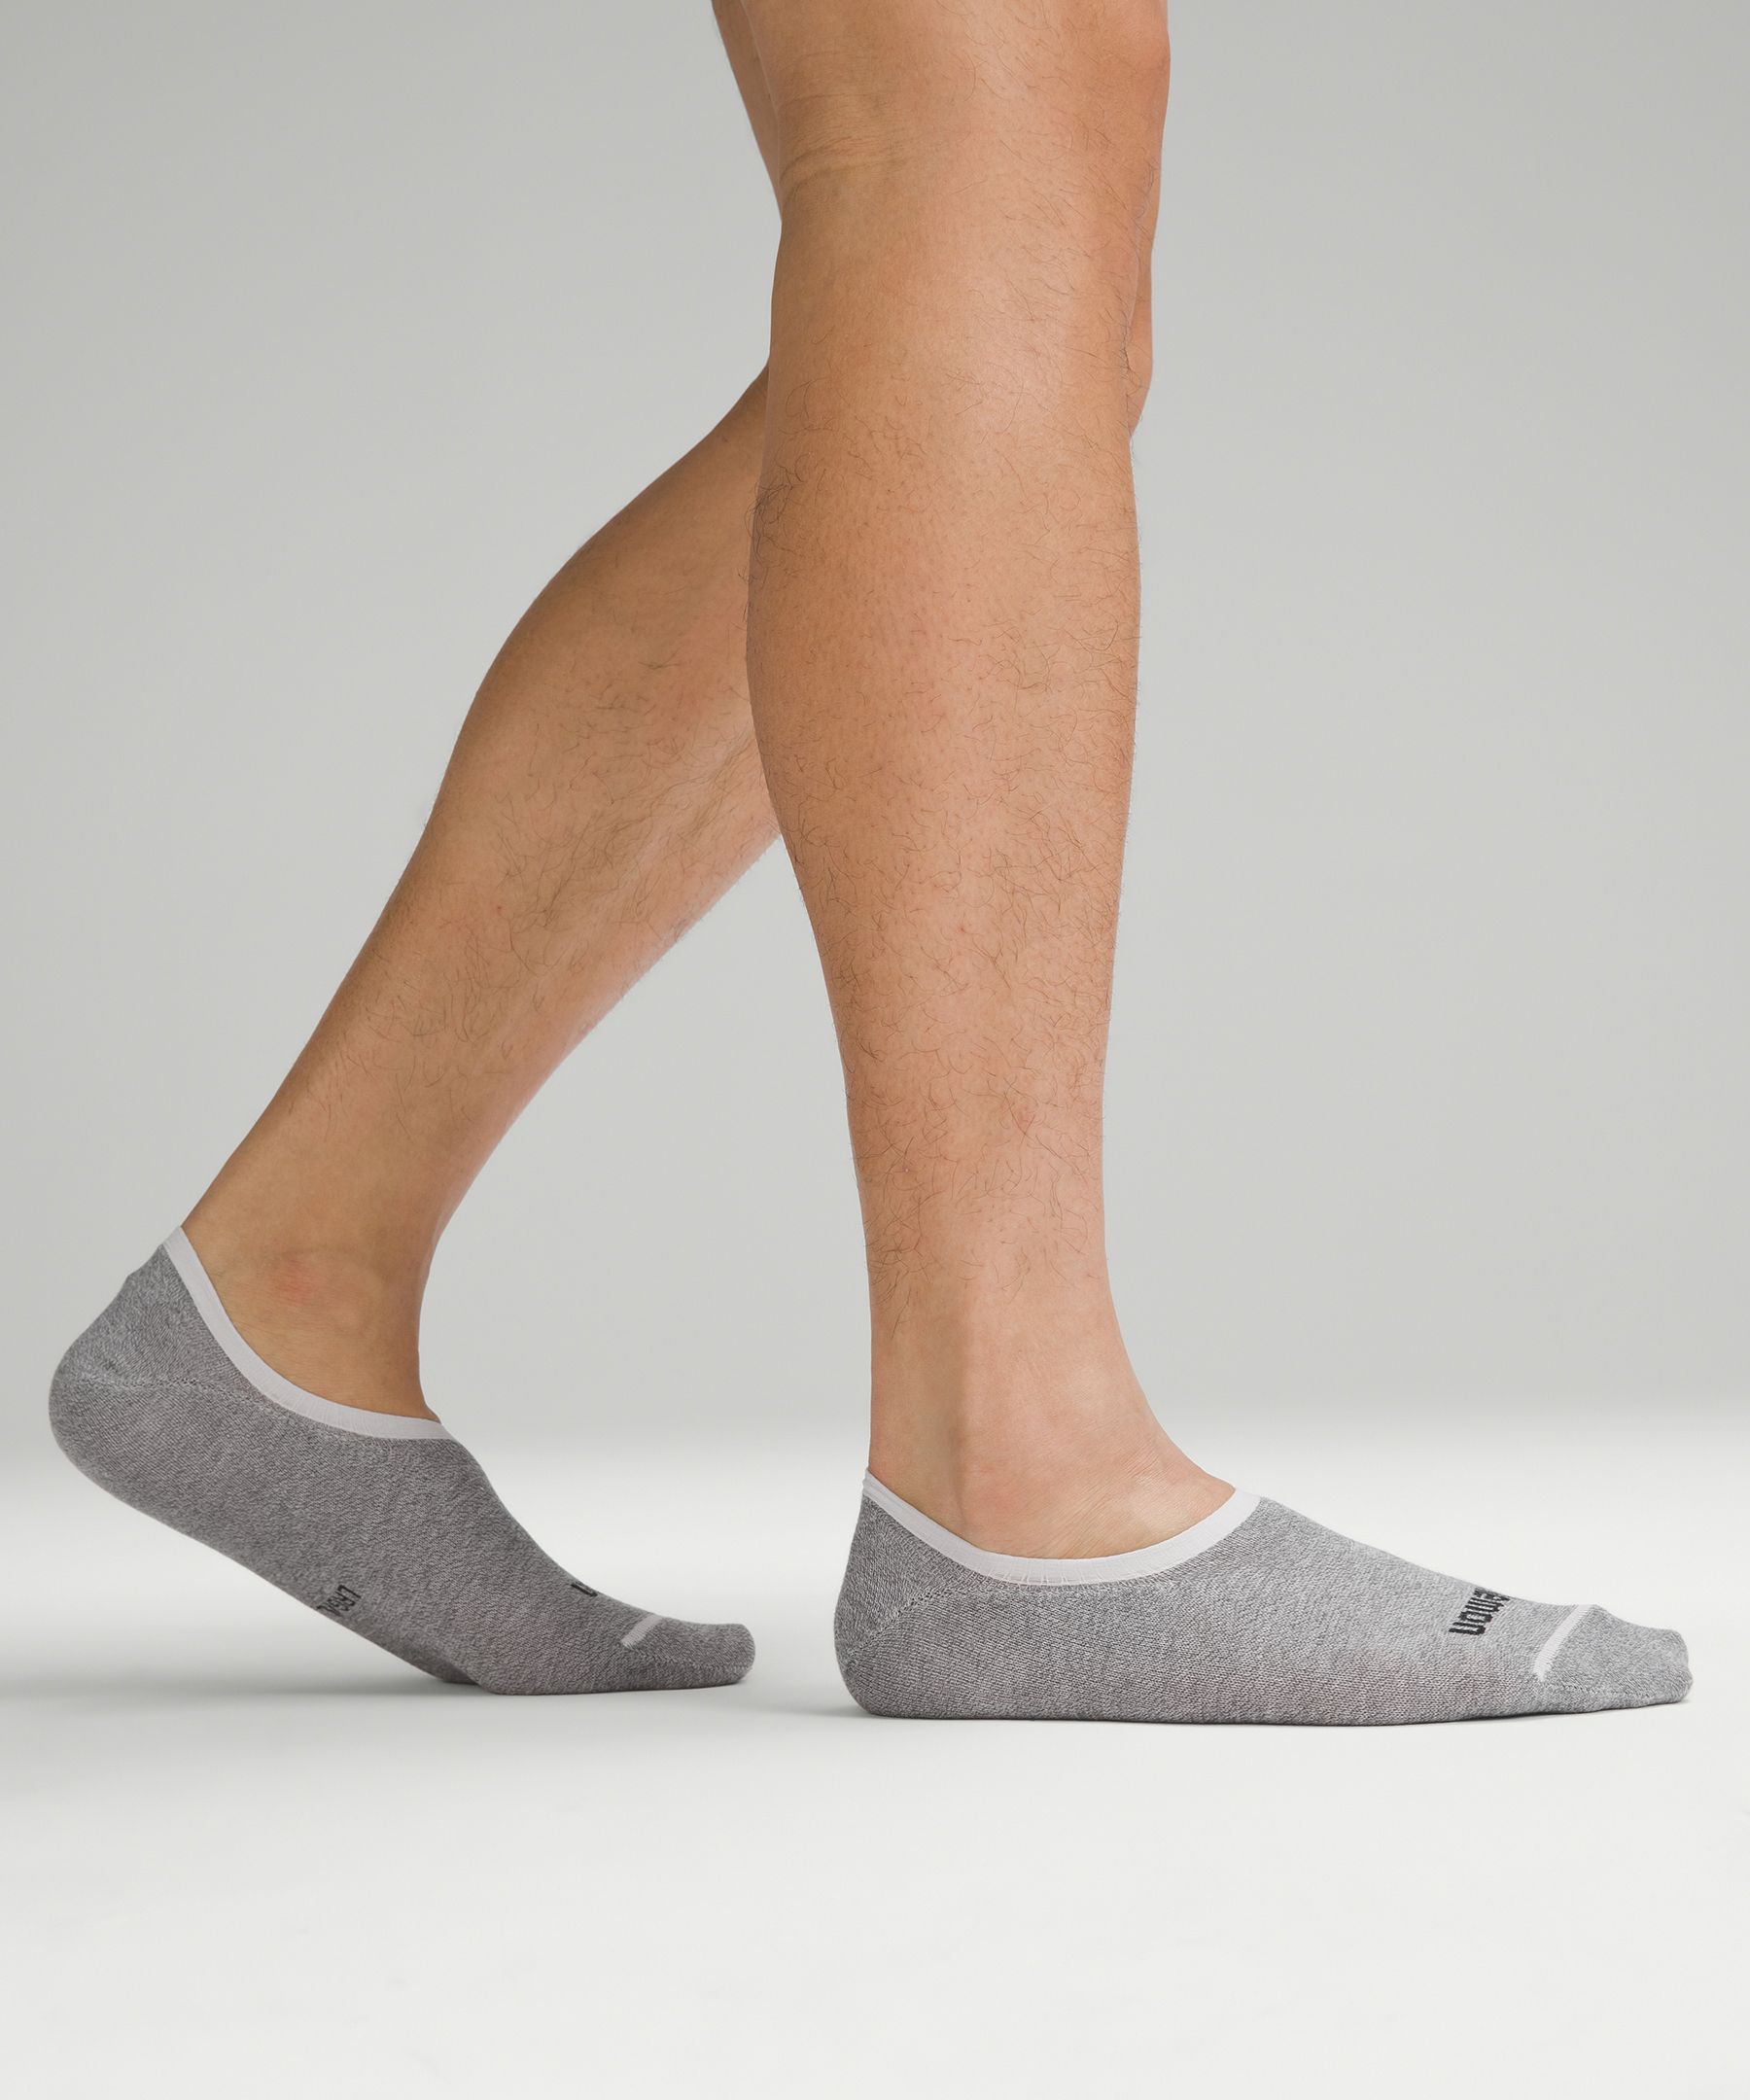 Shop Lululemon Daily Stride Comfort No-show Socks 5 Pack